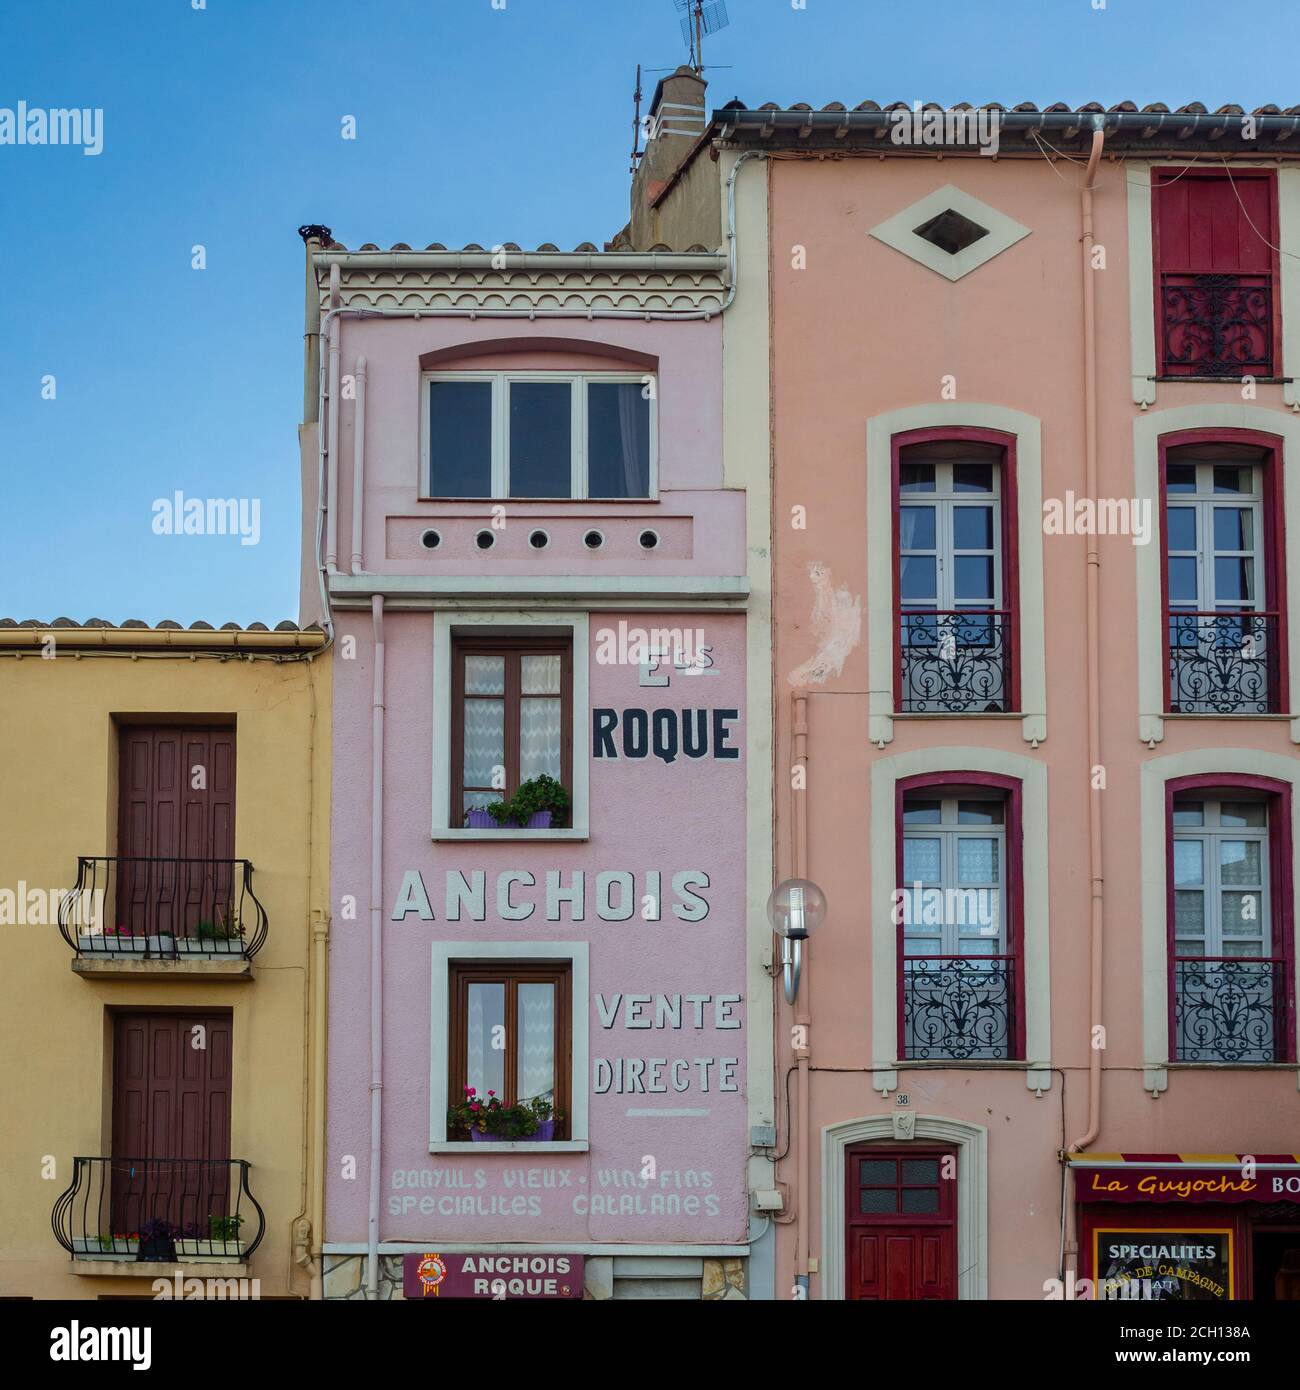 Anchois Vente Direction, scène de rue, Collioure, Sud de la France Banque D'Images